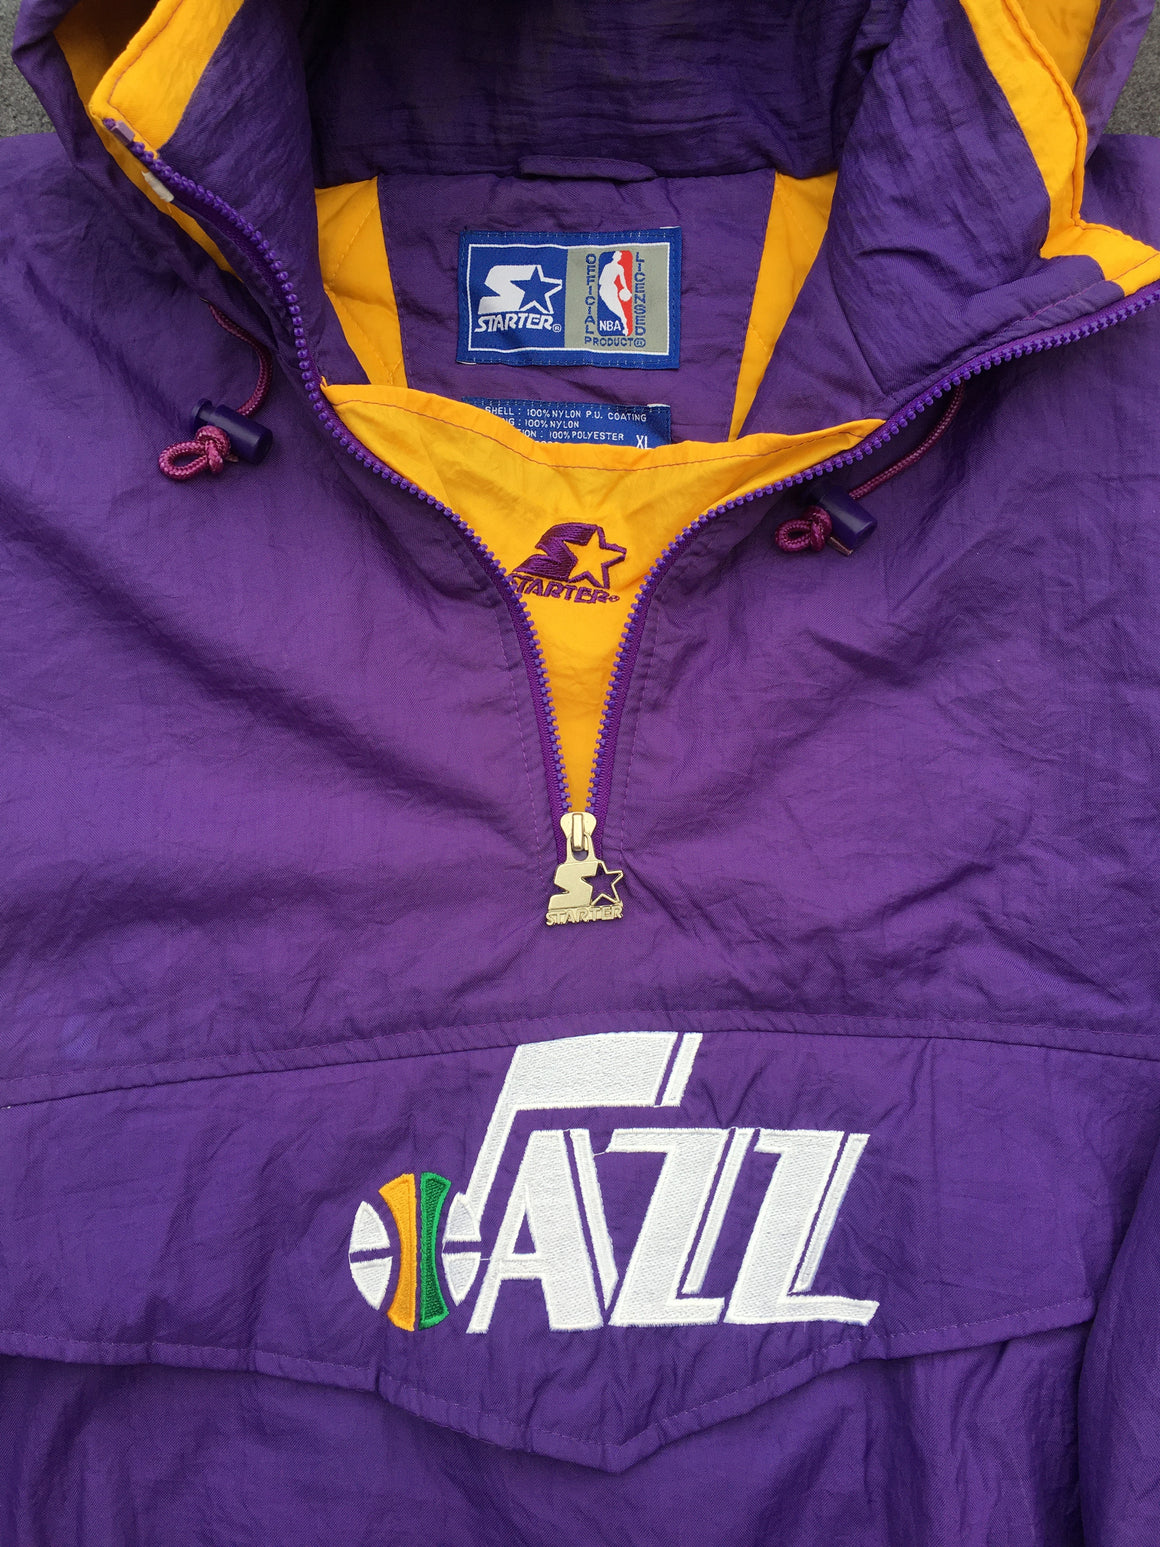 Utah Jazz Starter jacket - XL / 2XL